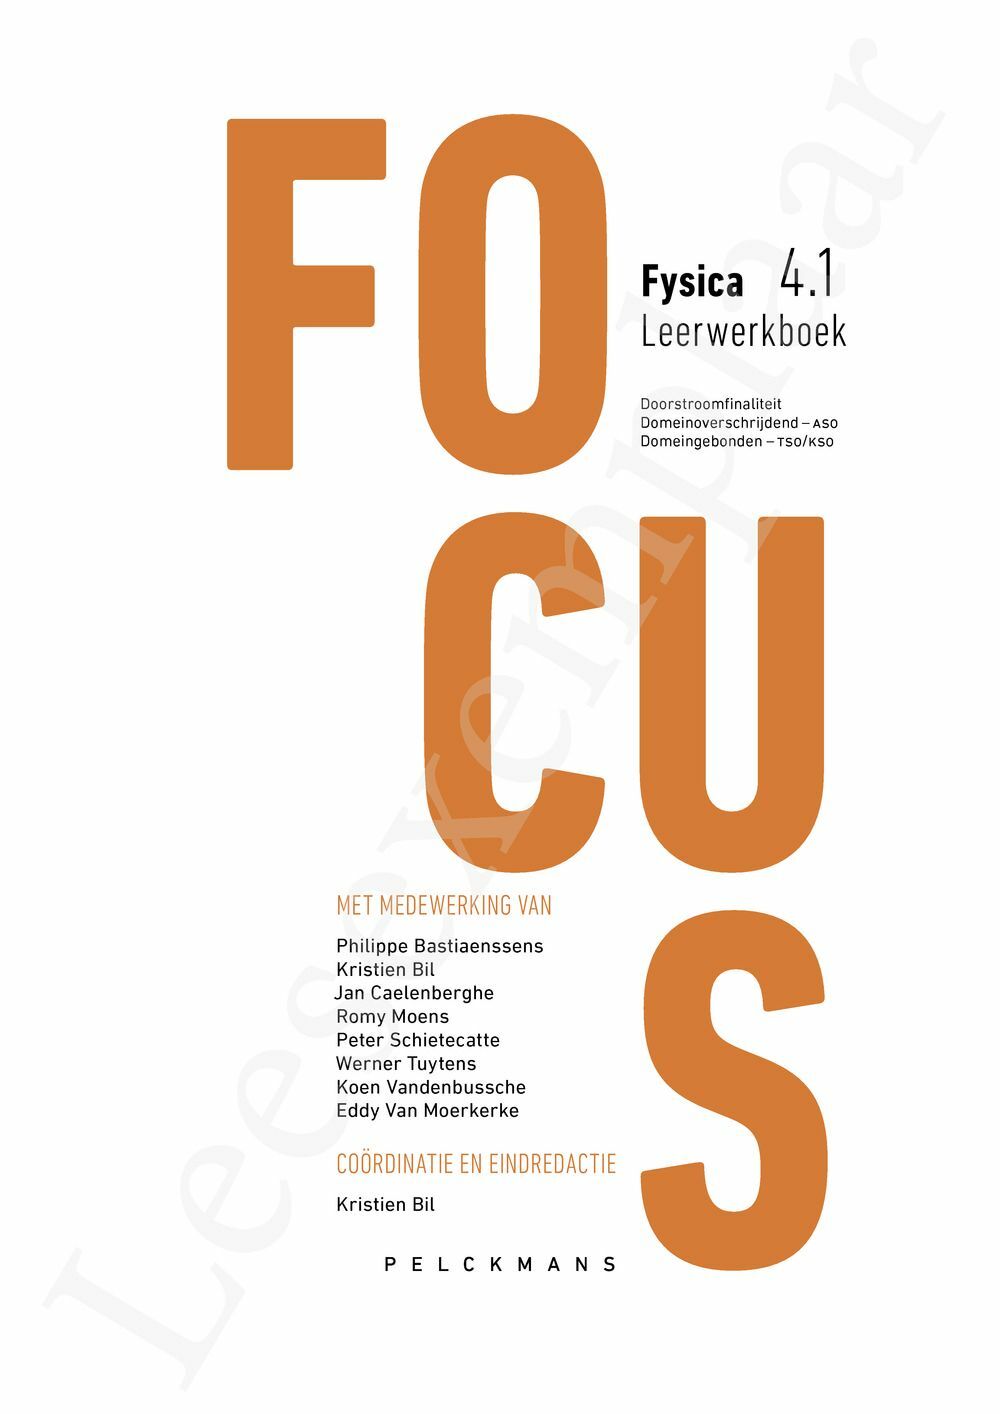 Preview: Focus Fysica 4.1 Leerwerkboek (incl. Pelckmans Portaal)